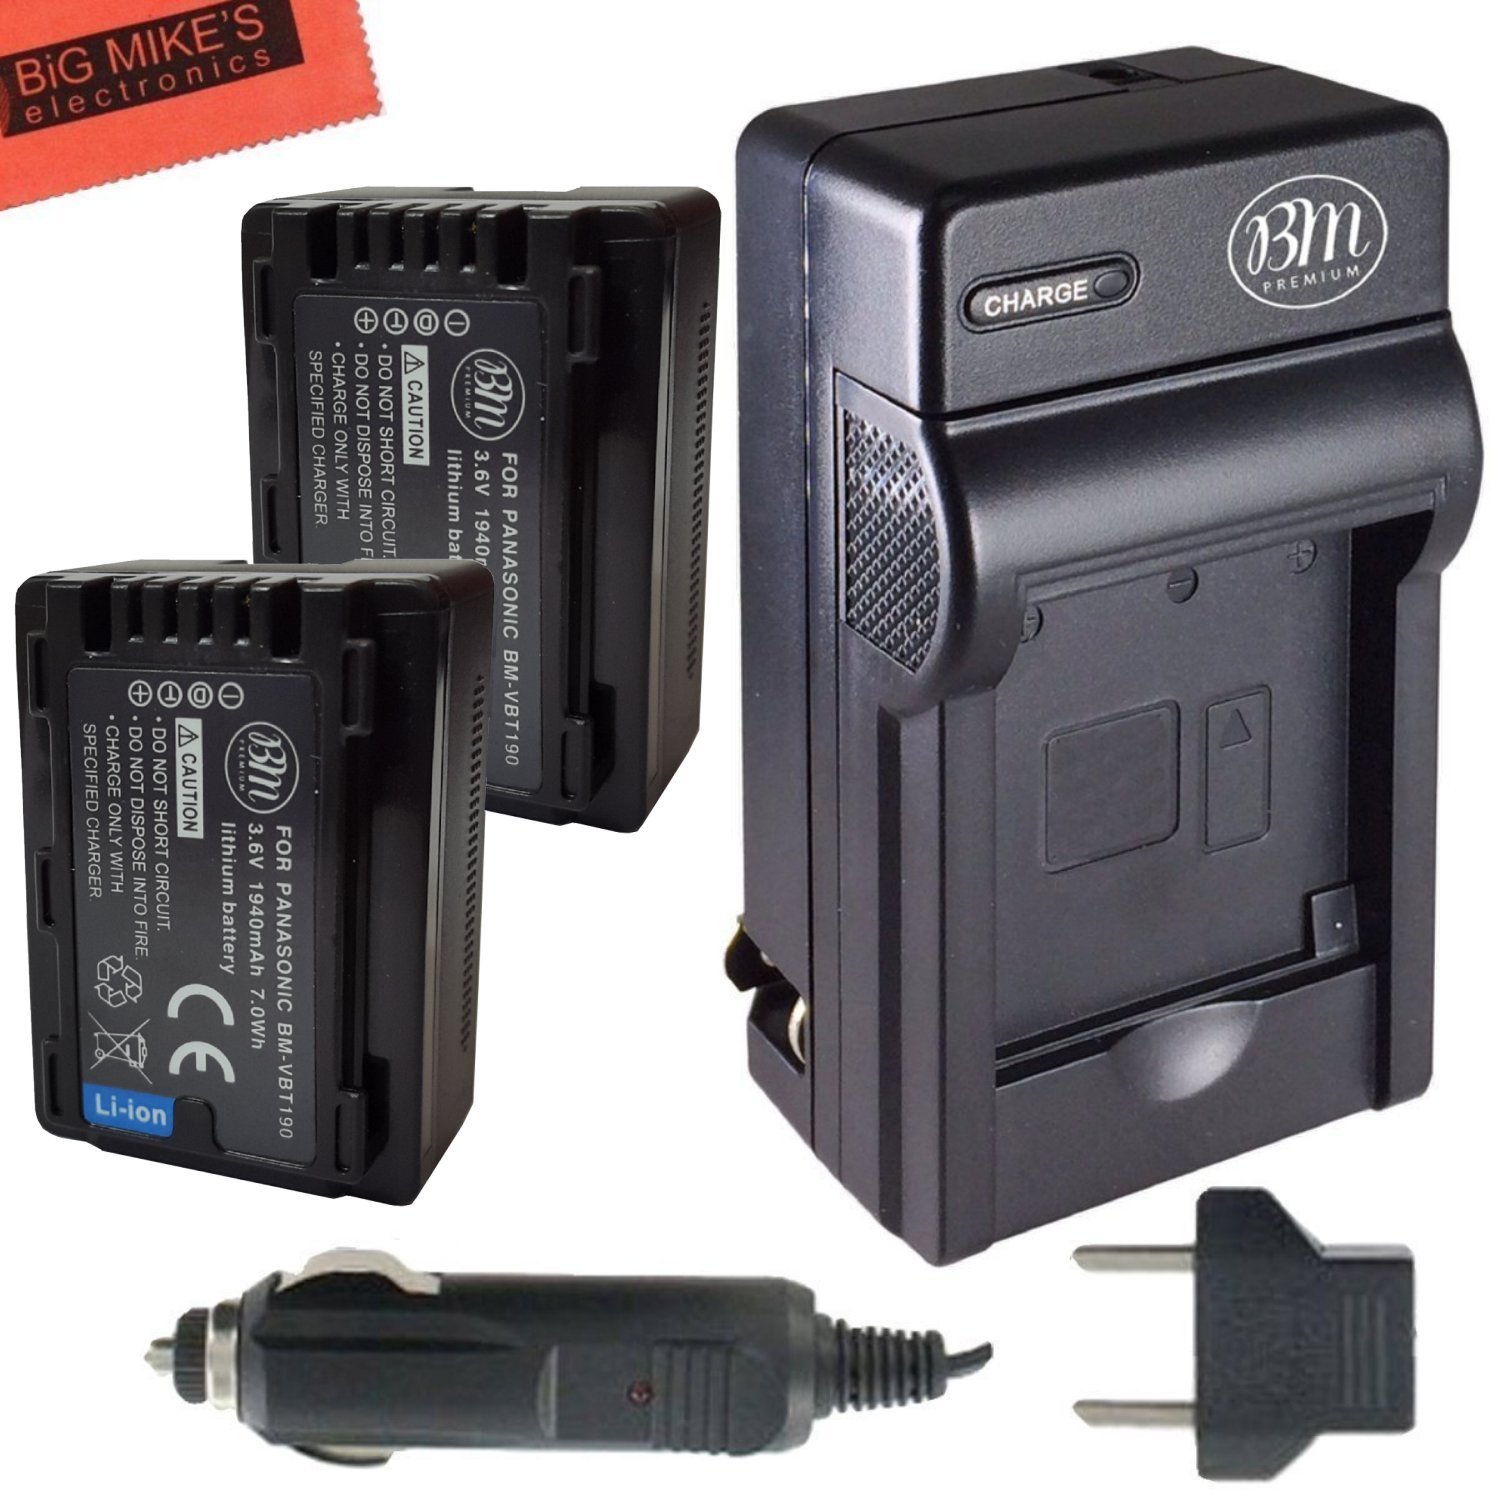 BM Premium 2-Pack of VW-VBT190 Batteries and Battery Charger for Panasonic  HCV250, HCV380, HCV510, HC-V520, HC-V550, HC-V710, HC-V720, HC-V750,  HC-V770, HC-VX870, HC-VX981, HC-W580, HC-W850, HC-WXF991 Walmart Canada